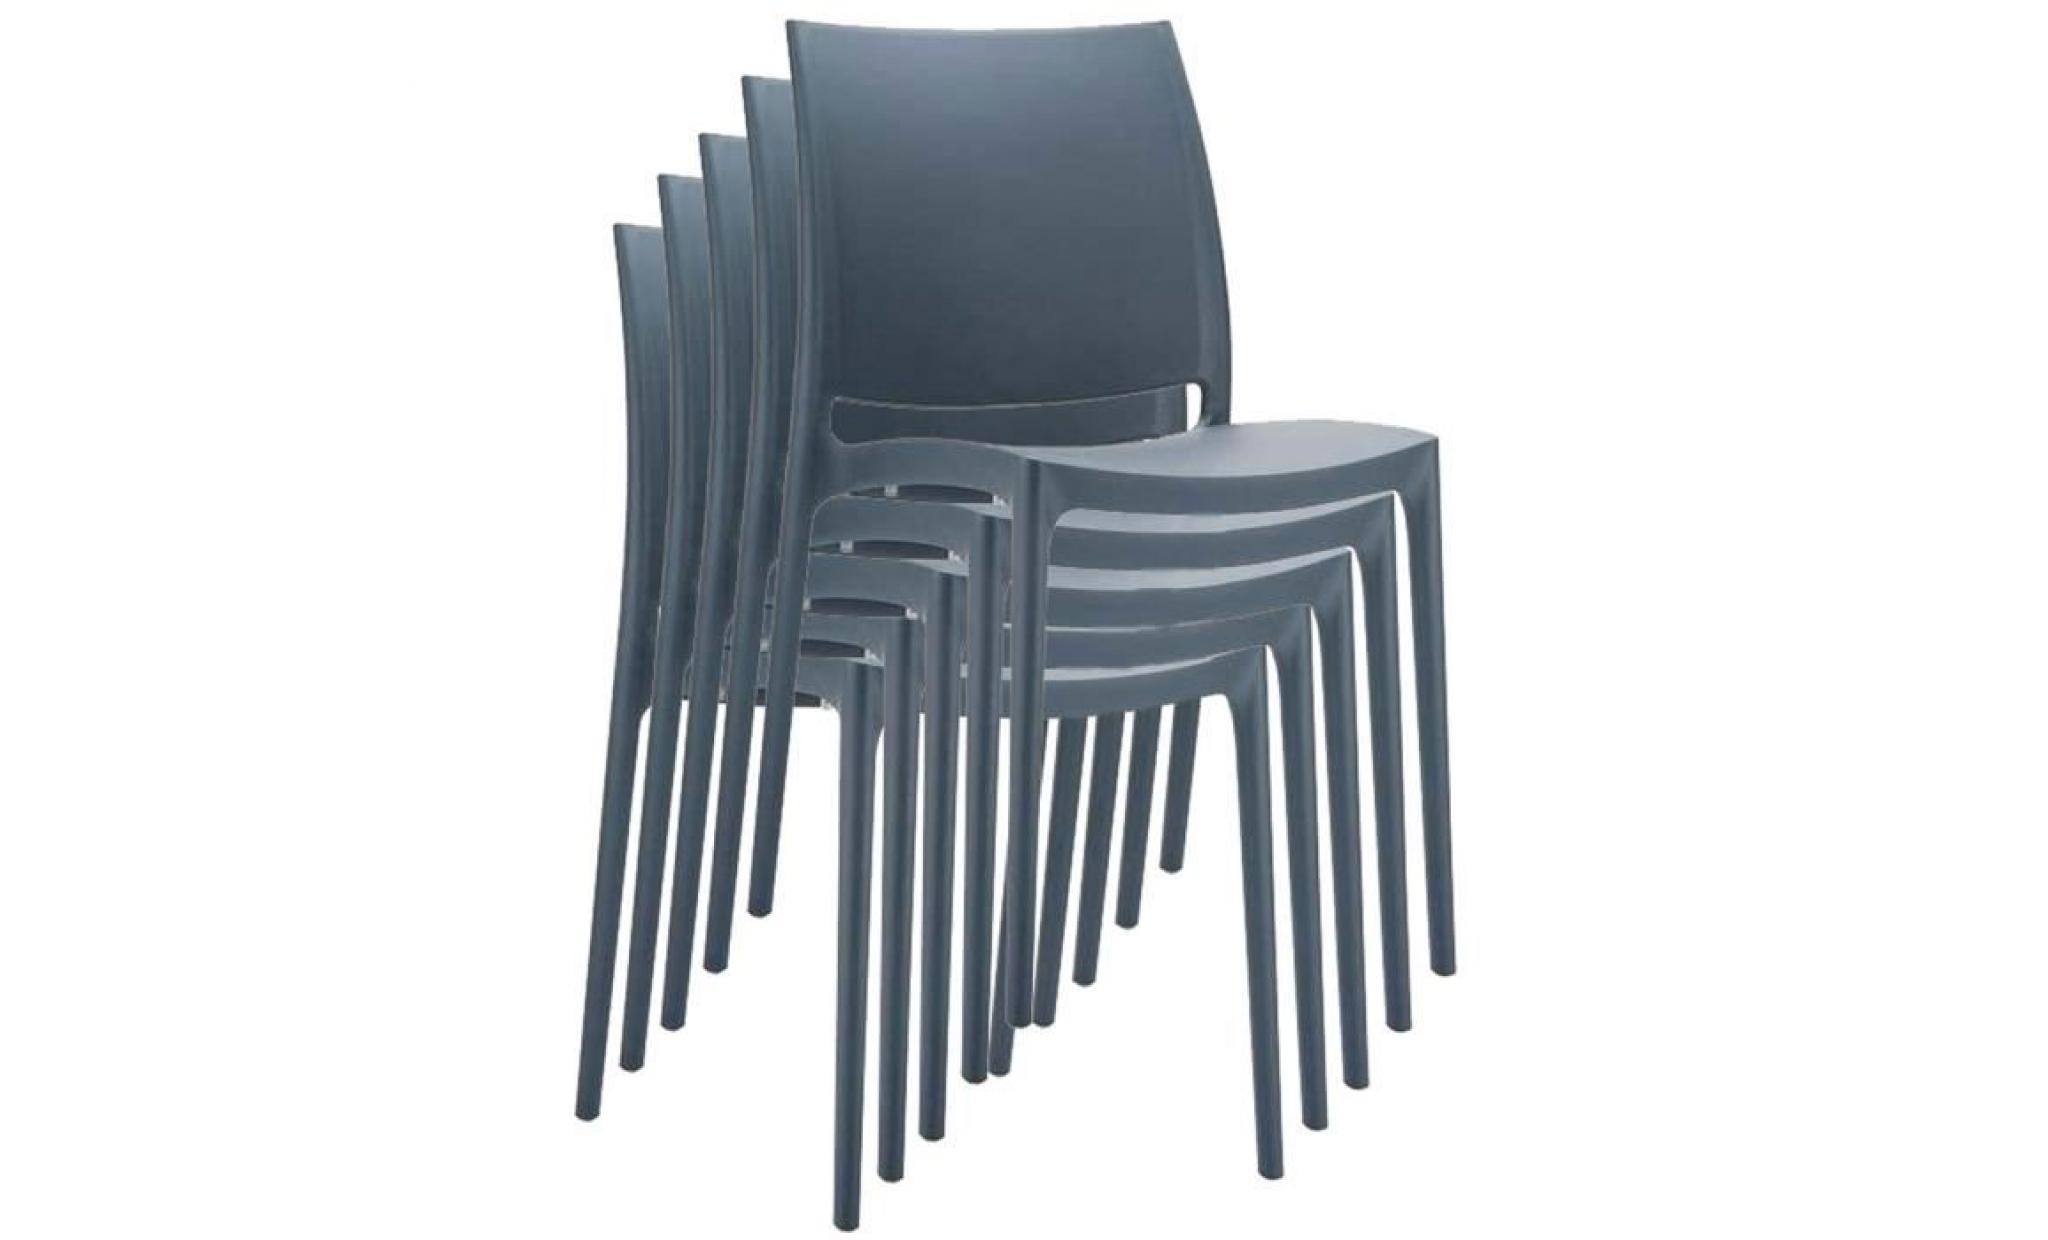 Chaise de jardin empilable en plastique gris foncé, Dim : H81 x P50 x L44 cm pas cher